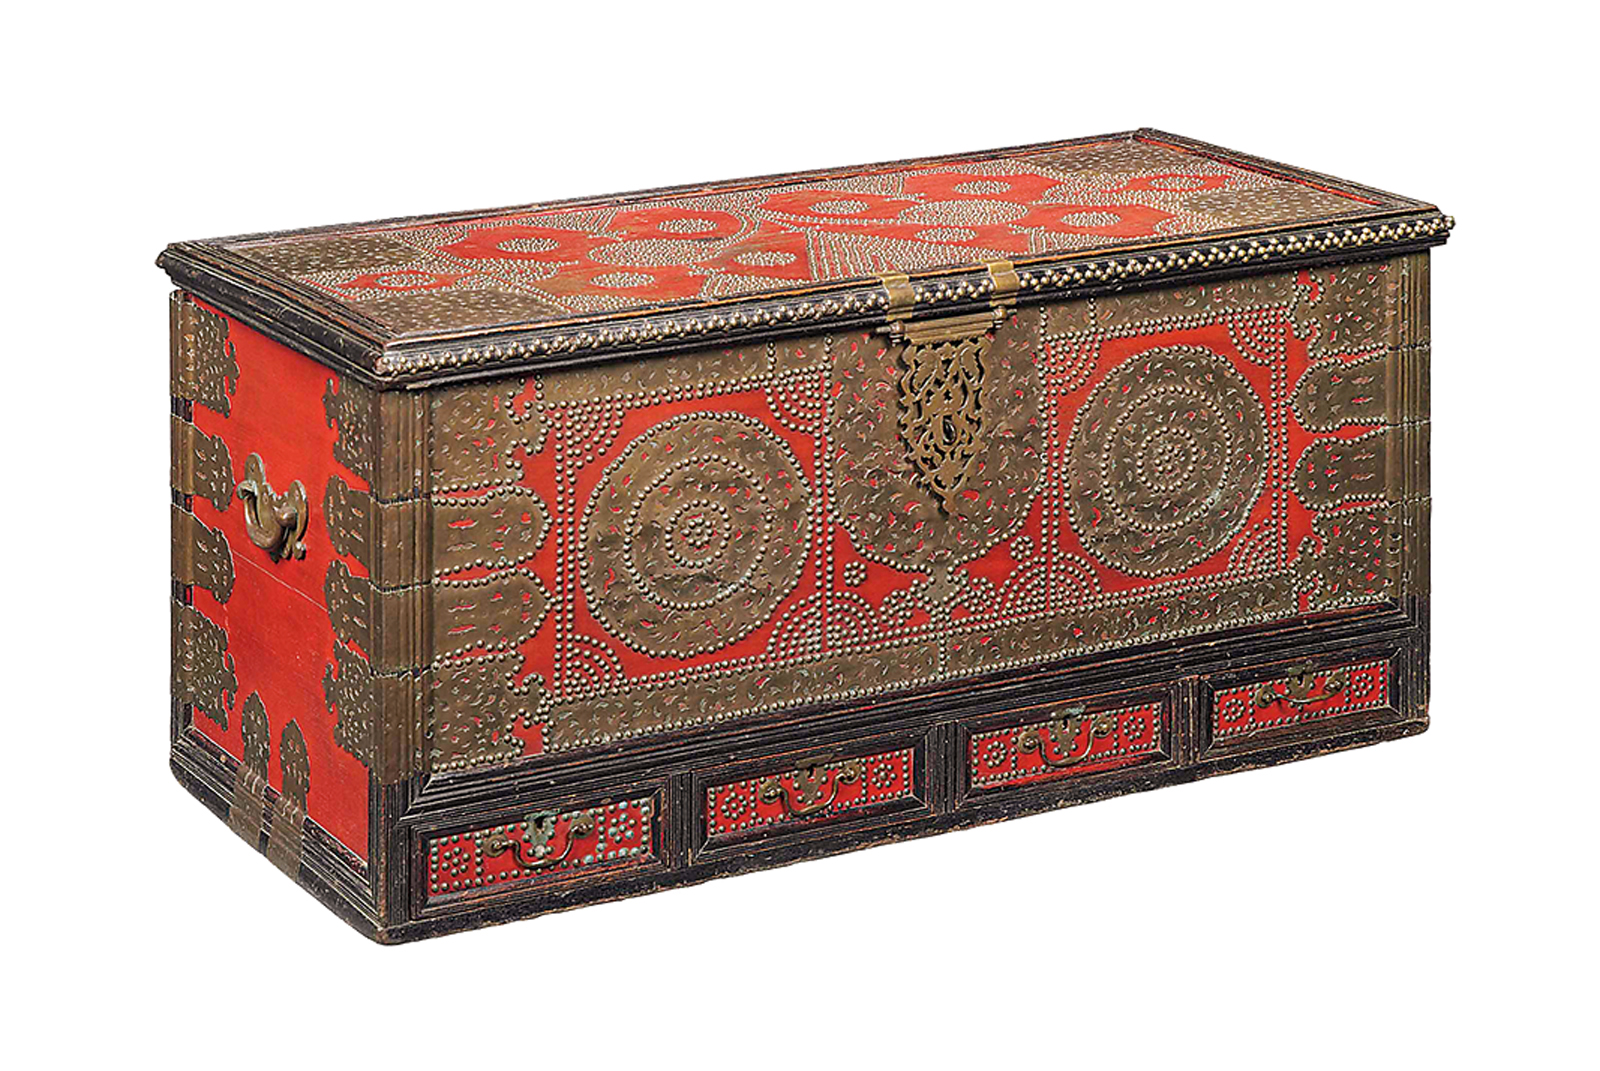 <p>这种19世纪的&ldquo;桑给巴尔&rdquo;箱子使用了红漆铜双头螺栓和嵌花板，从外表看很可能是嫁妆箱。</p>